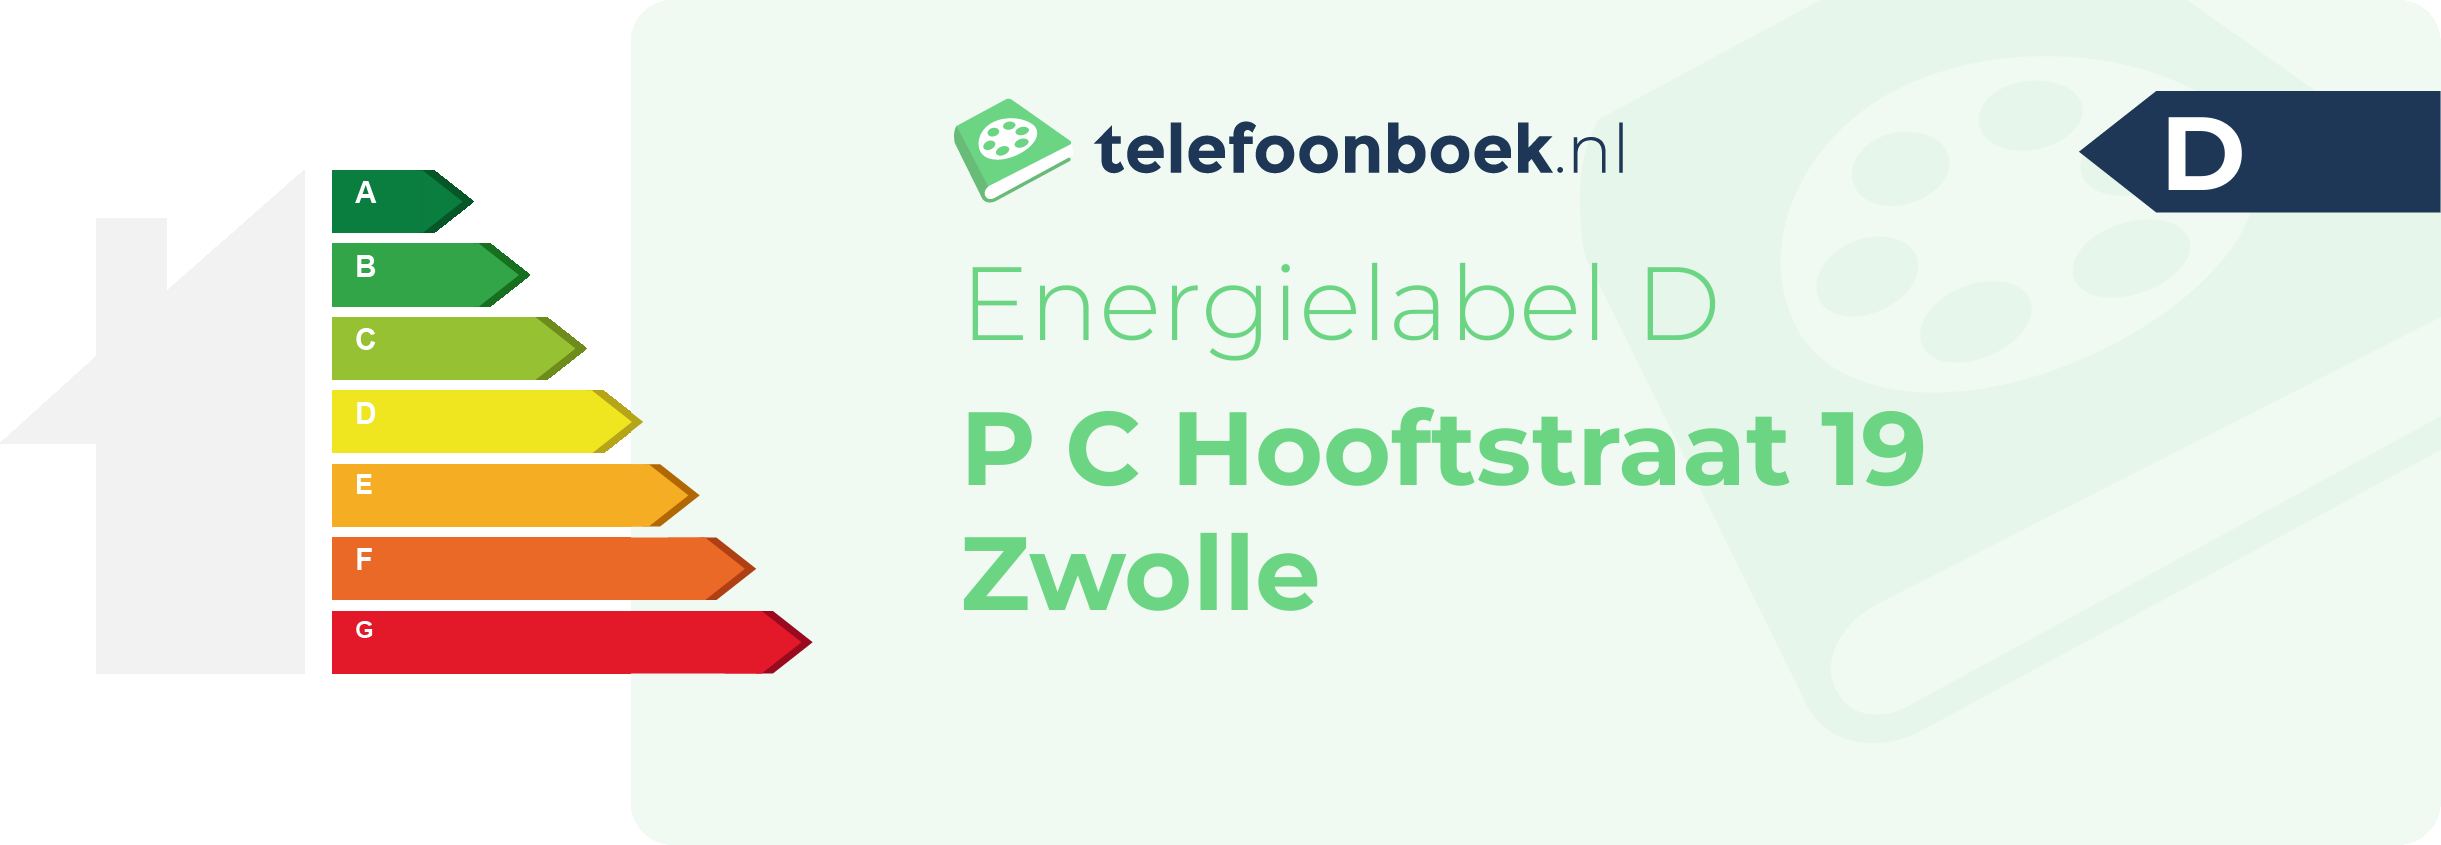 Energielabel P C Hooftstraat 19 Zwolle